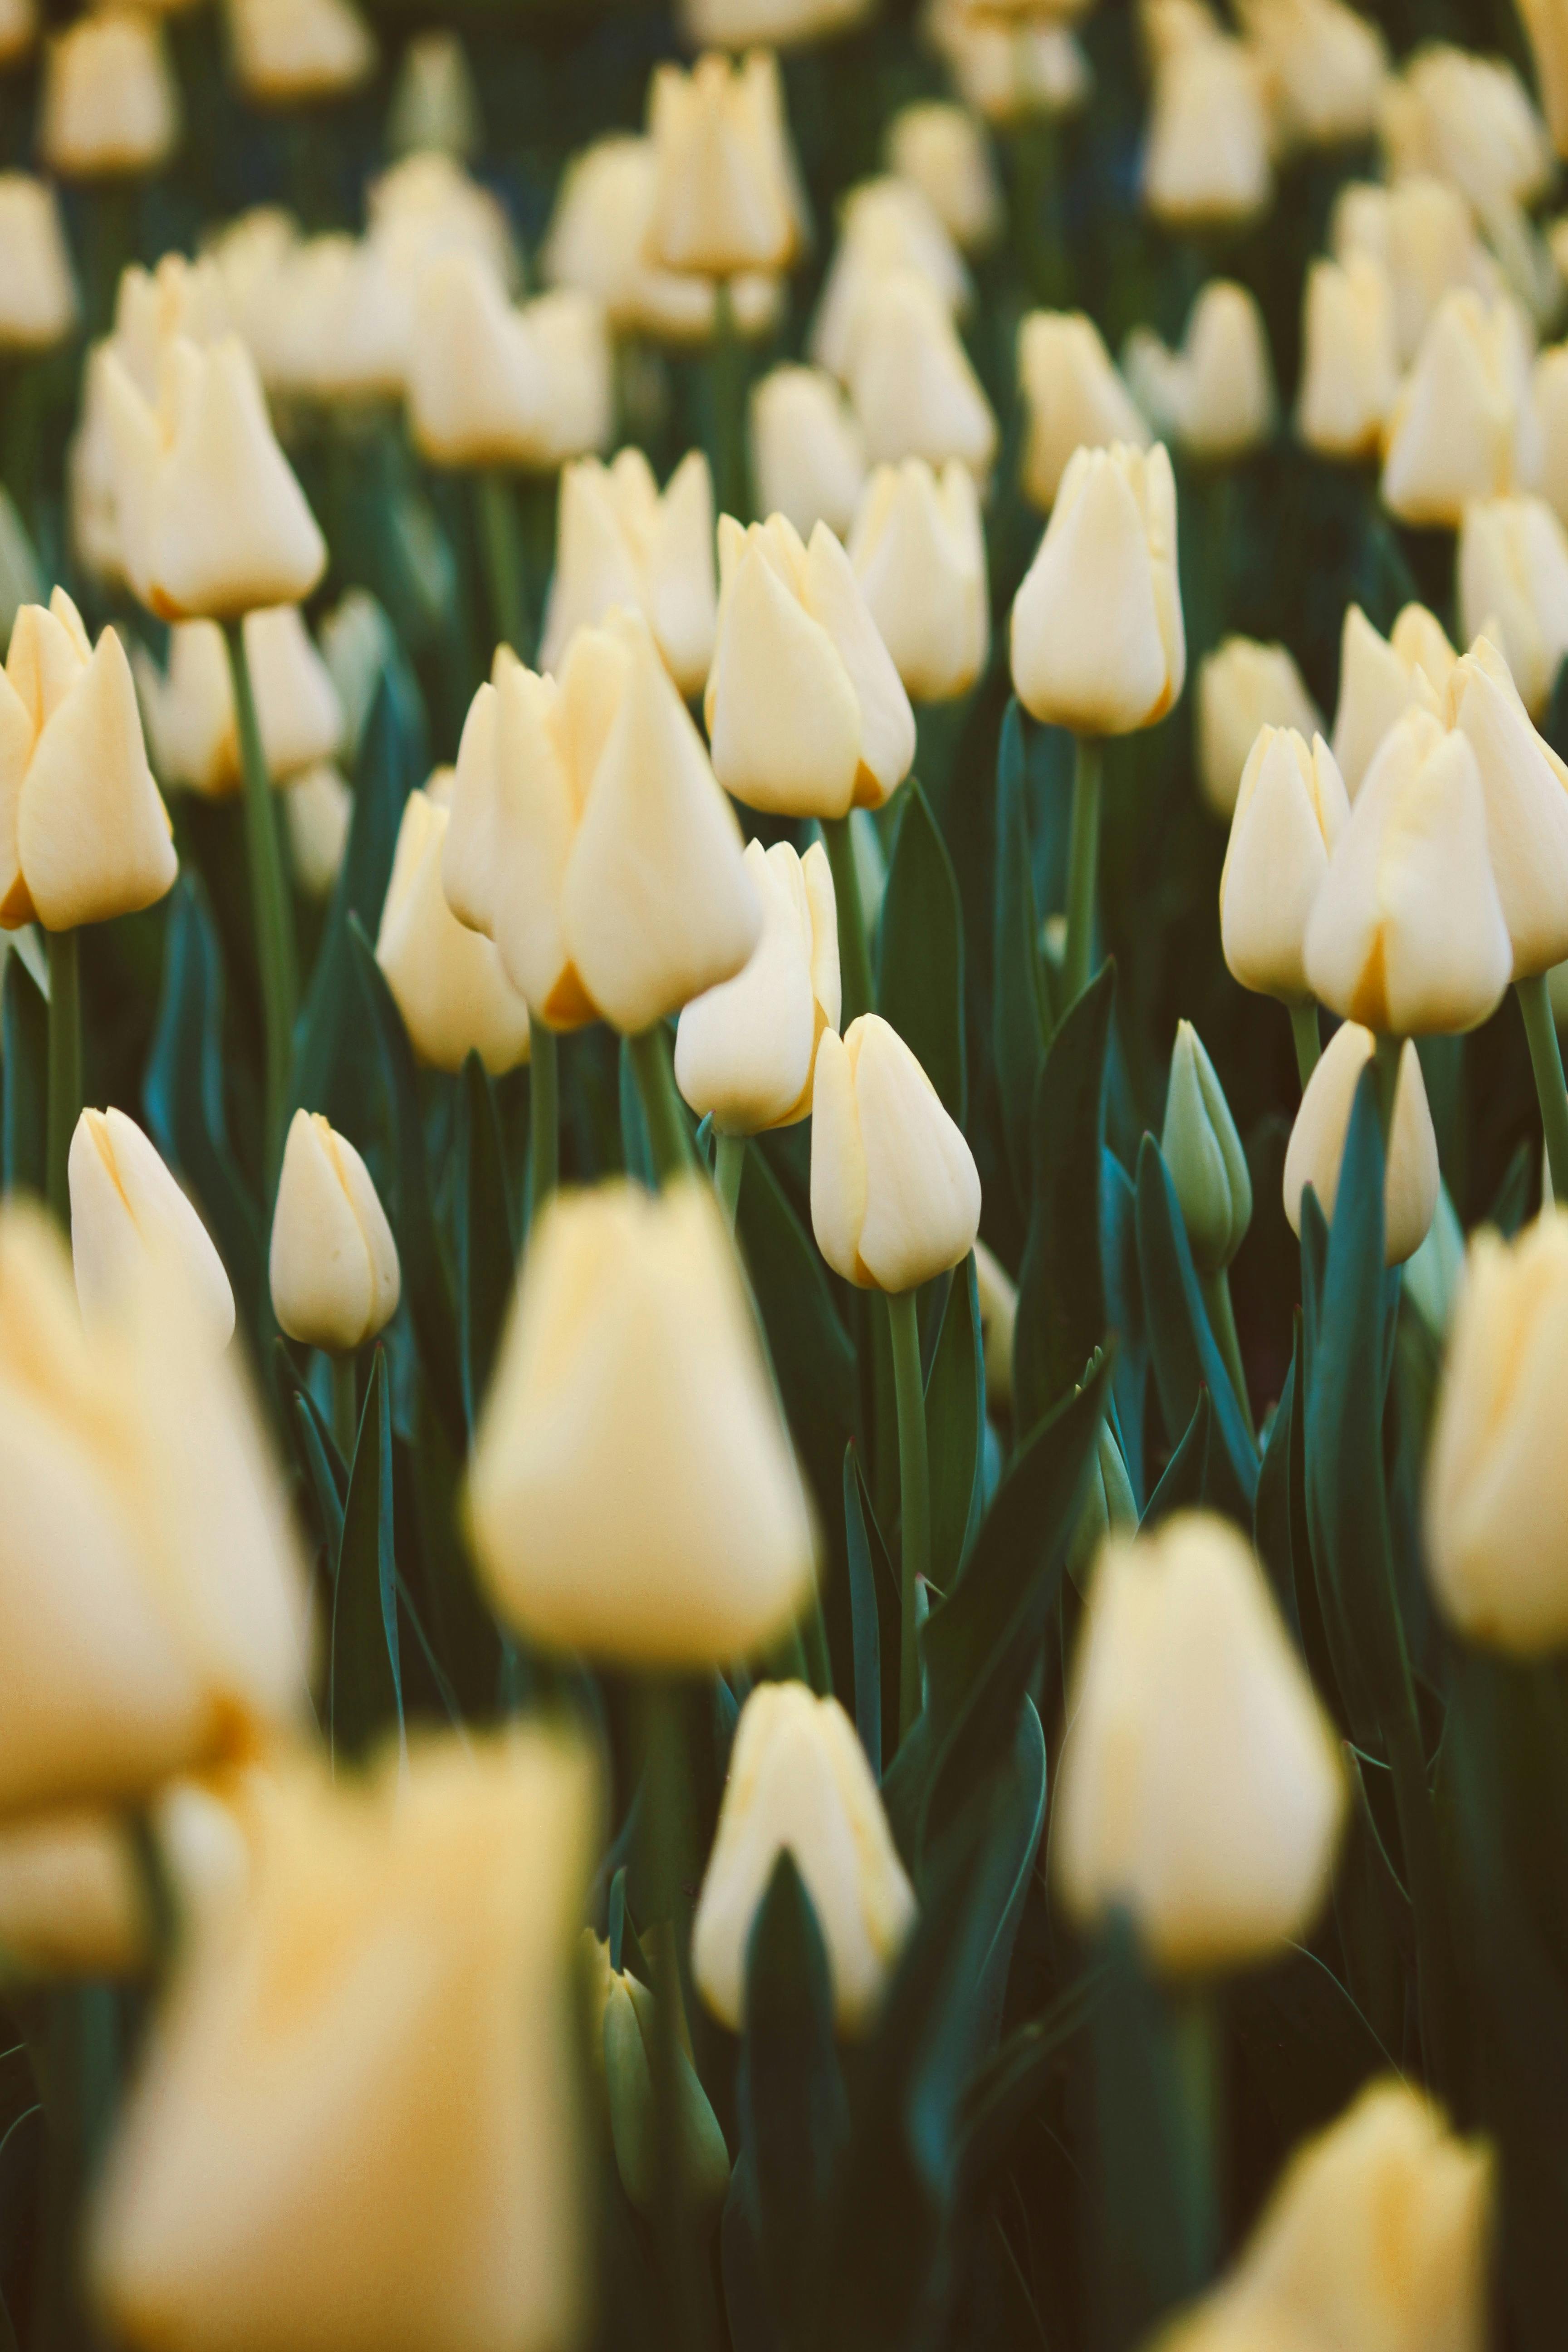 Không gian toàn bộ là màu vàng của những chiếc hoa tulip với nền xanh ngút ngàn sẽ khiến bạn thư giãn và tận hưởng hơi thở của tự nhiên.